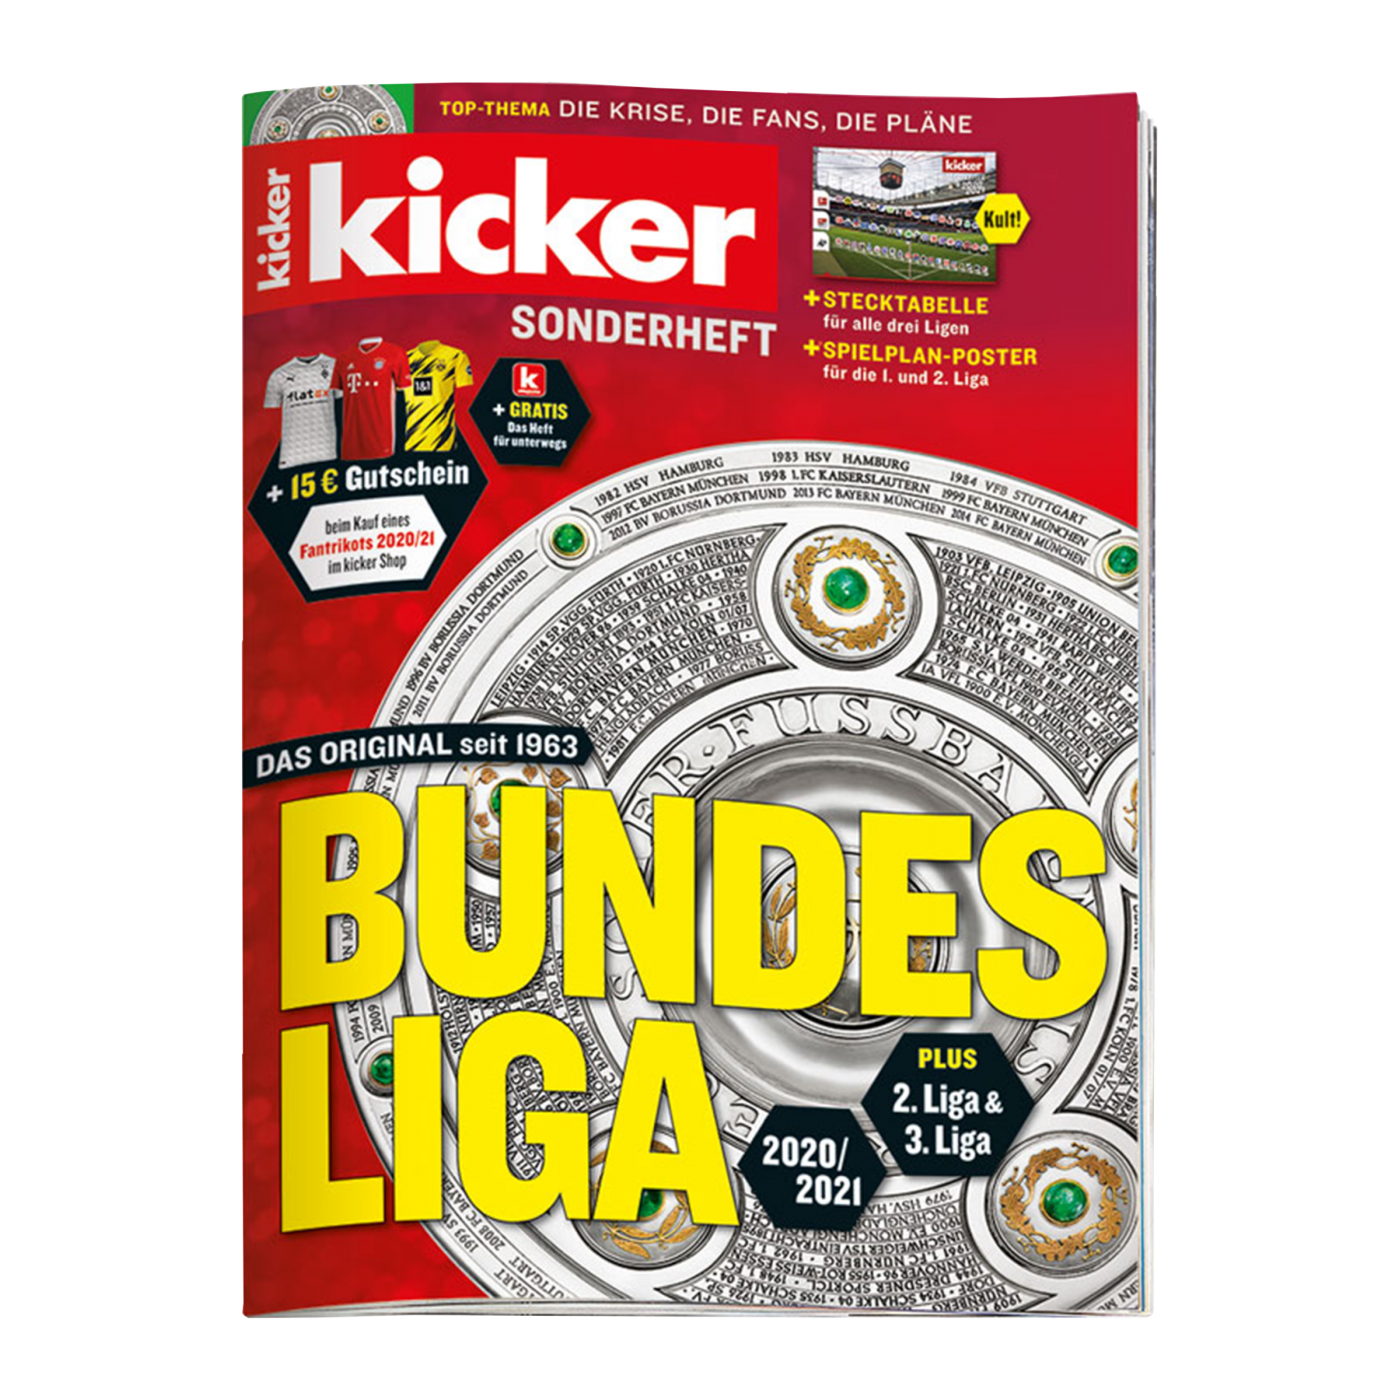 52 HQ Pictures Wann Erscheint Kicker Sonderheft Bundesliga 2021 15